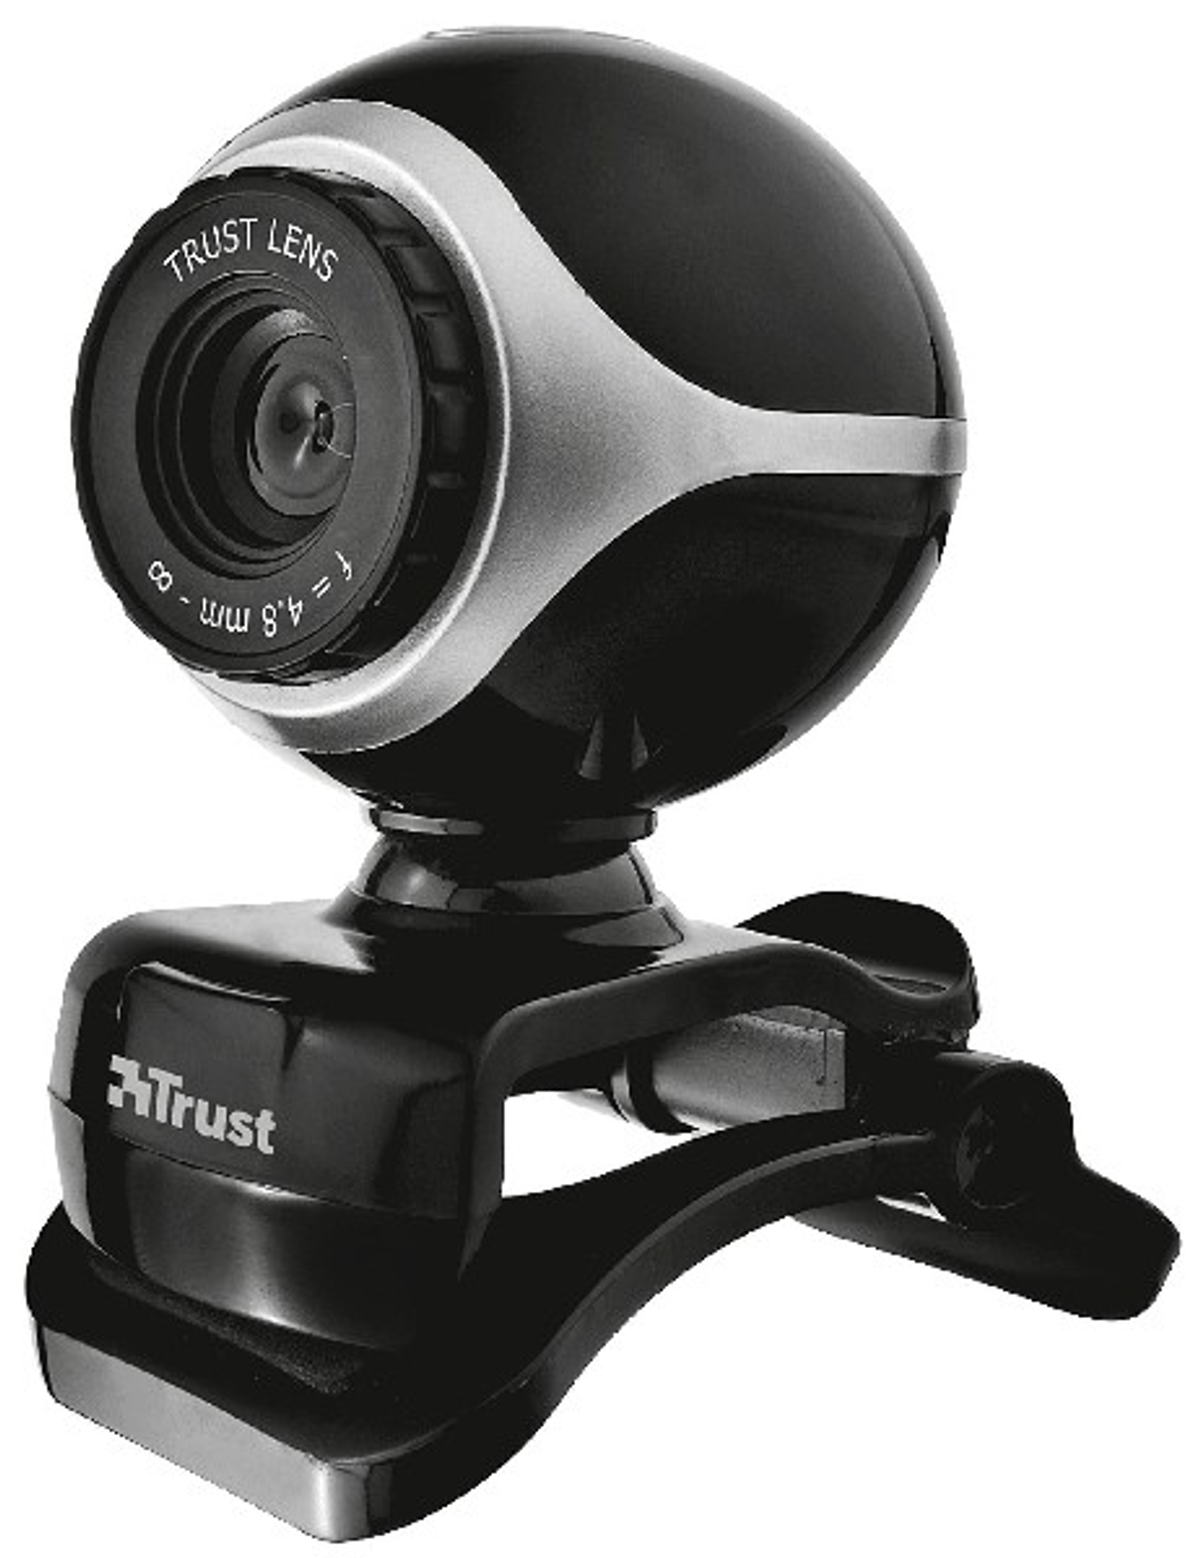 TRUST 17003 EXIS Webcam BLACK/SILVER WEBCAM